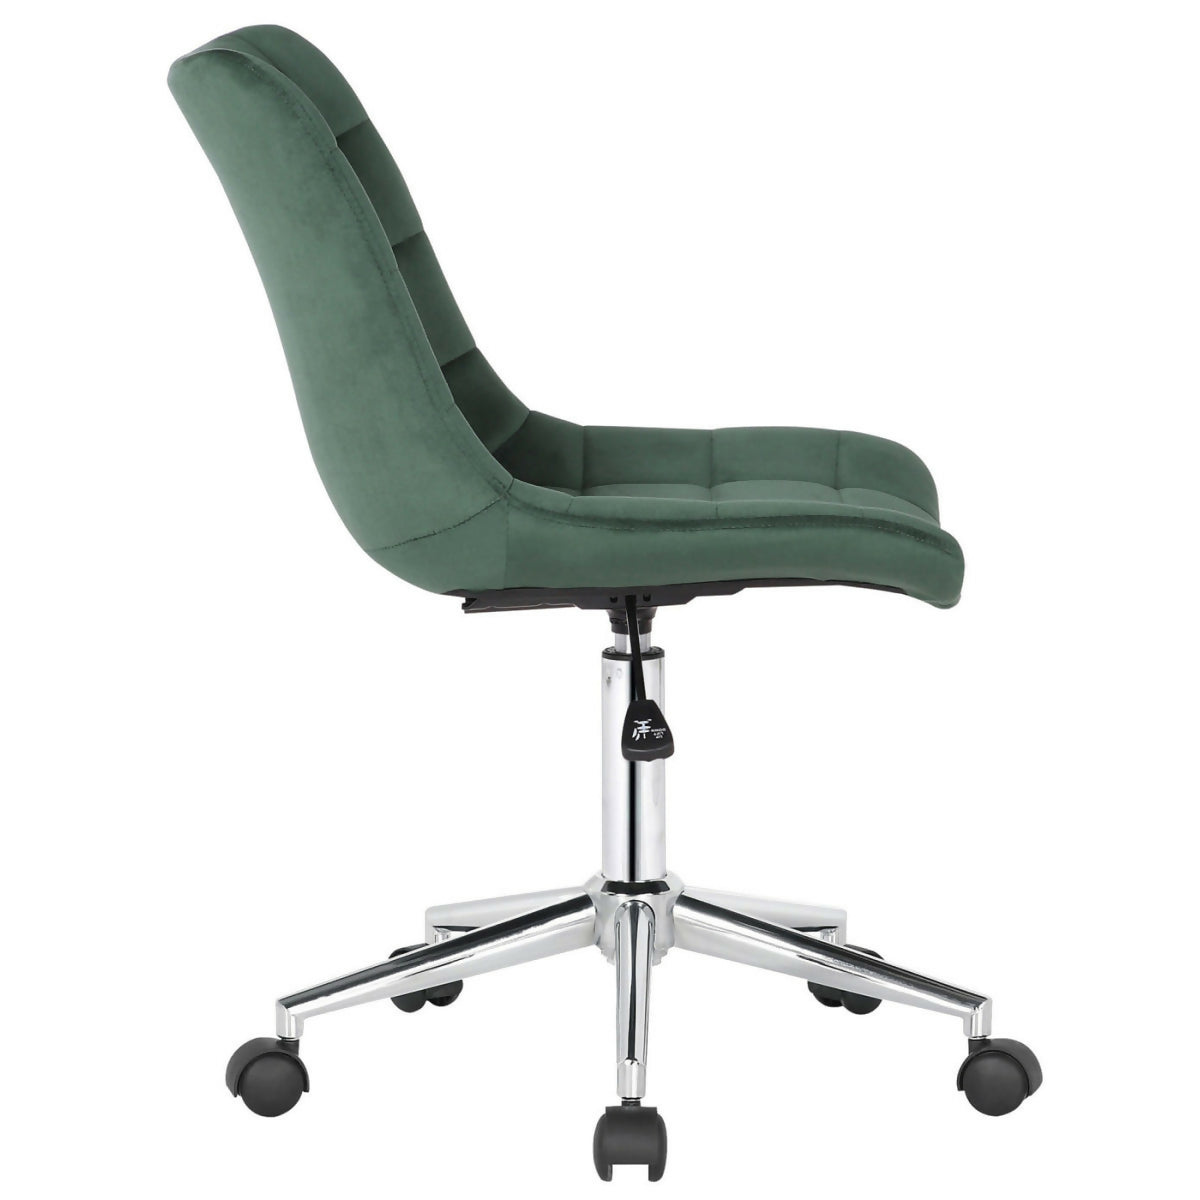 Medford office chair - Green velvet